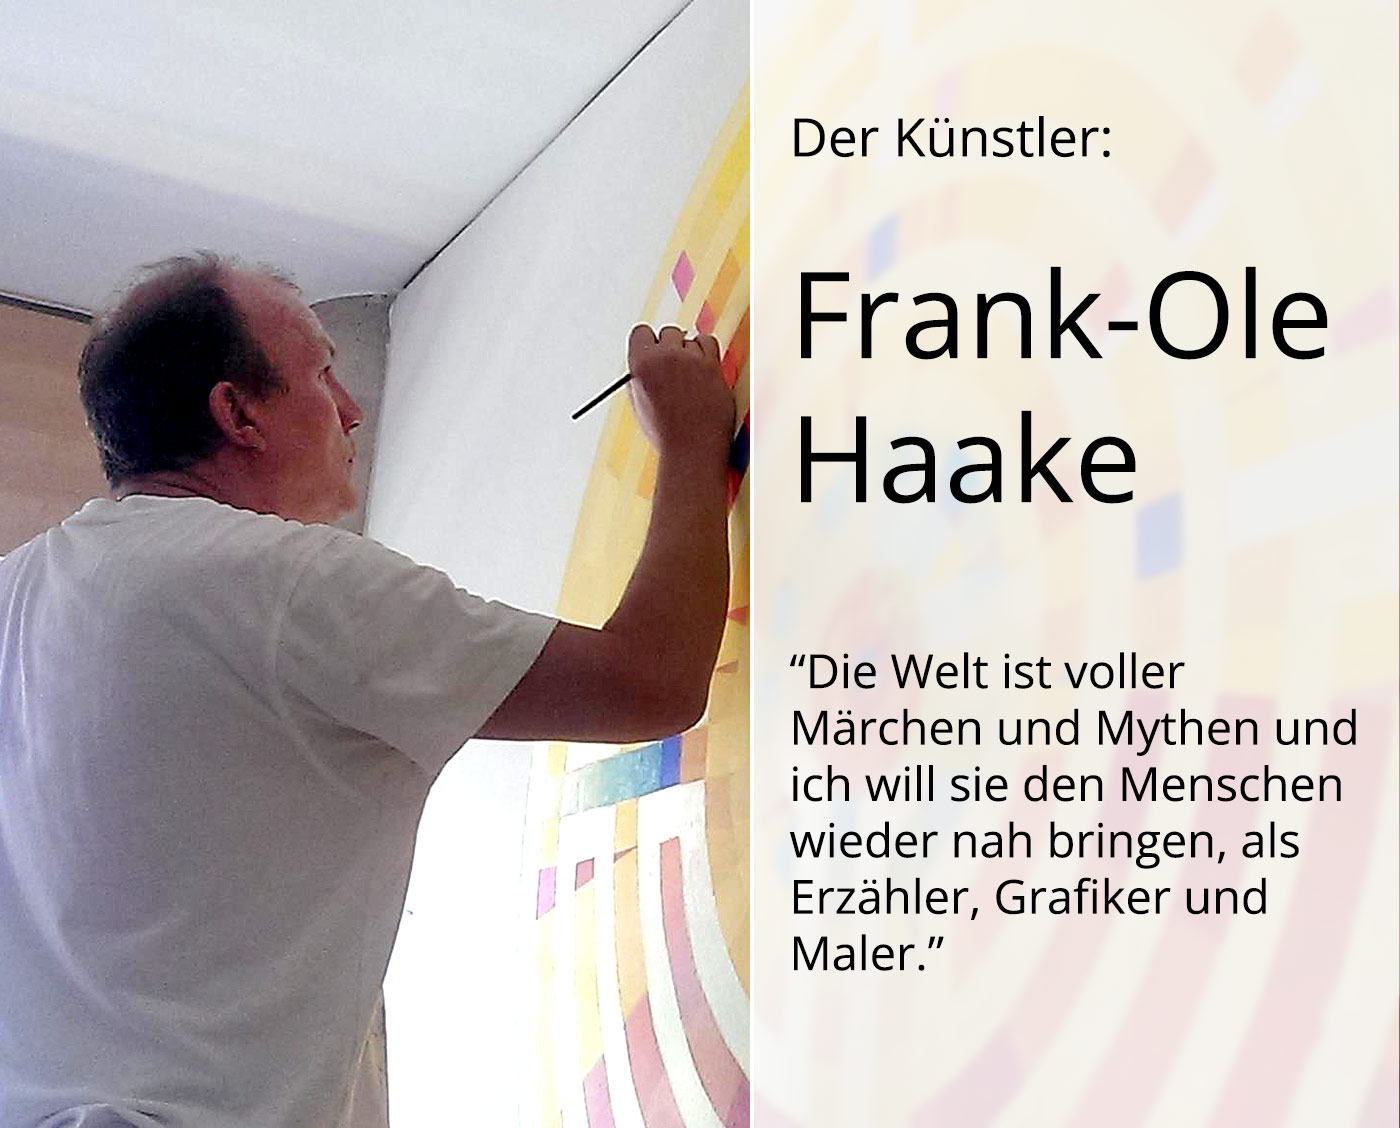 Grafik, mehrfarbiger Linoldruck von Frank-Ole Haake: "Ikarus landet 23"